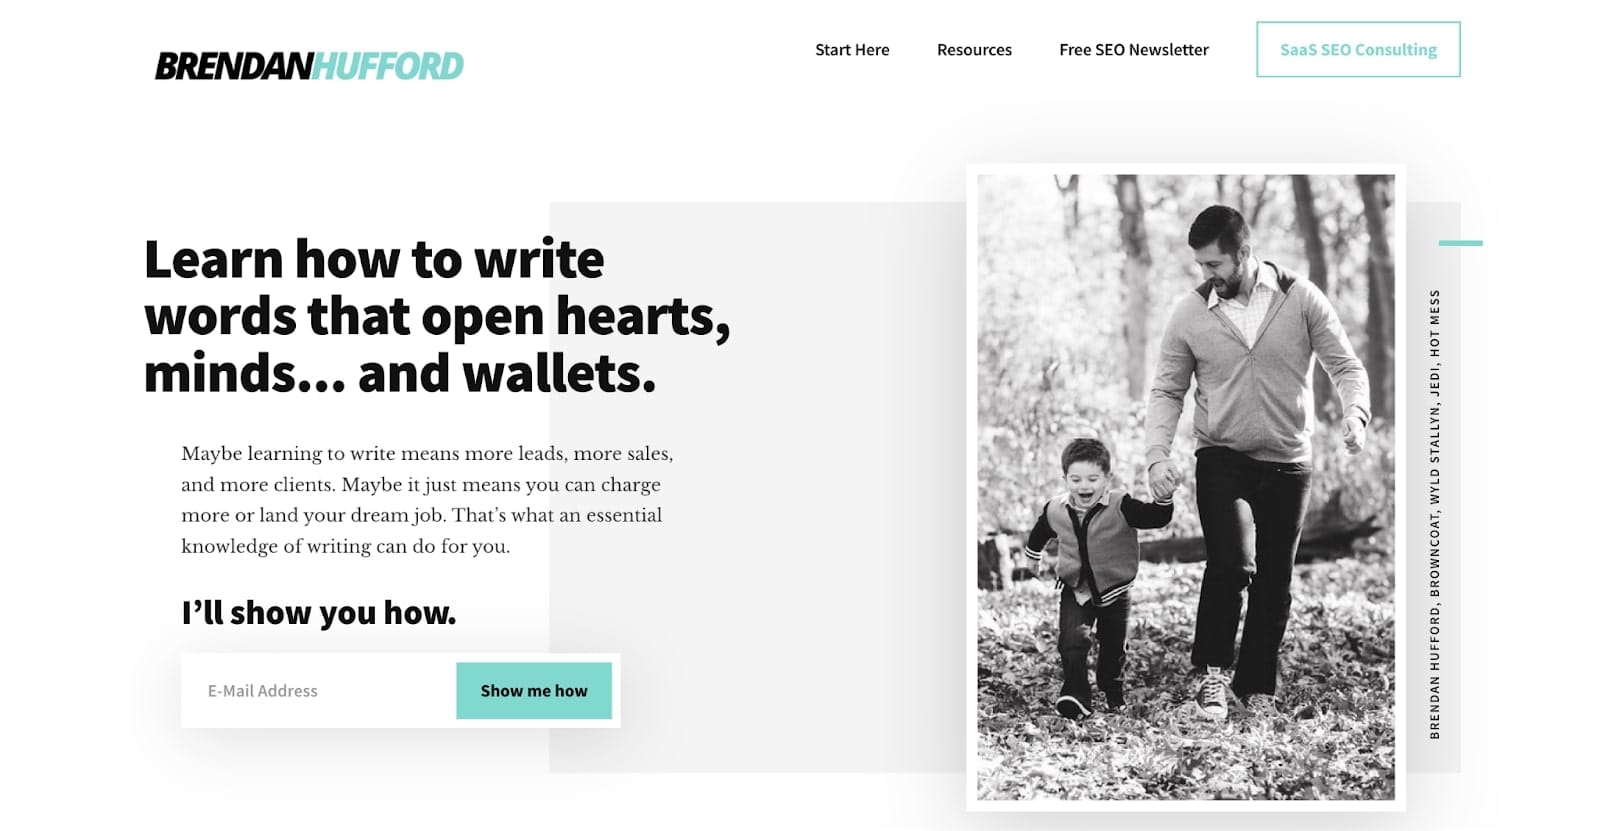 Brendan Hufford's website